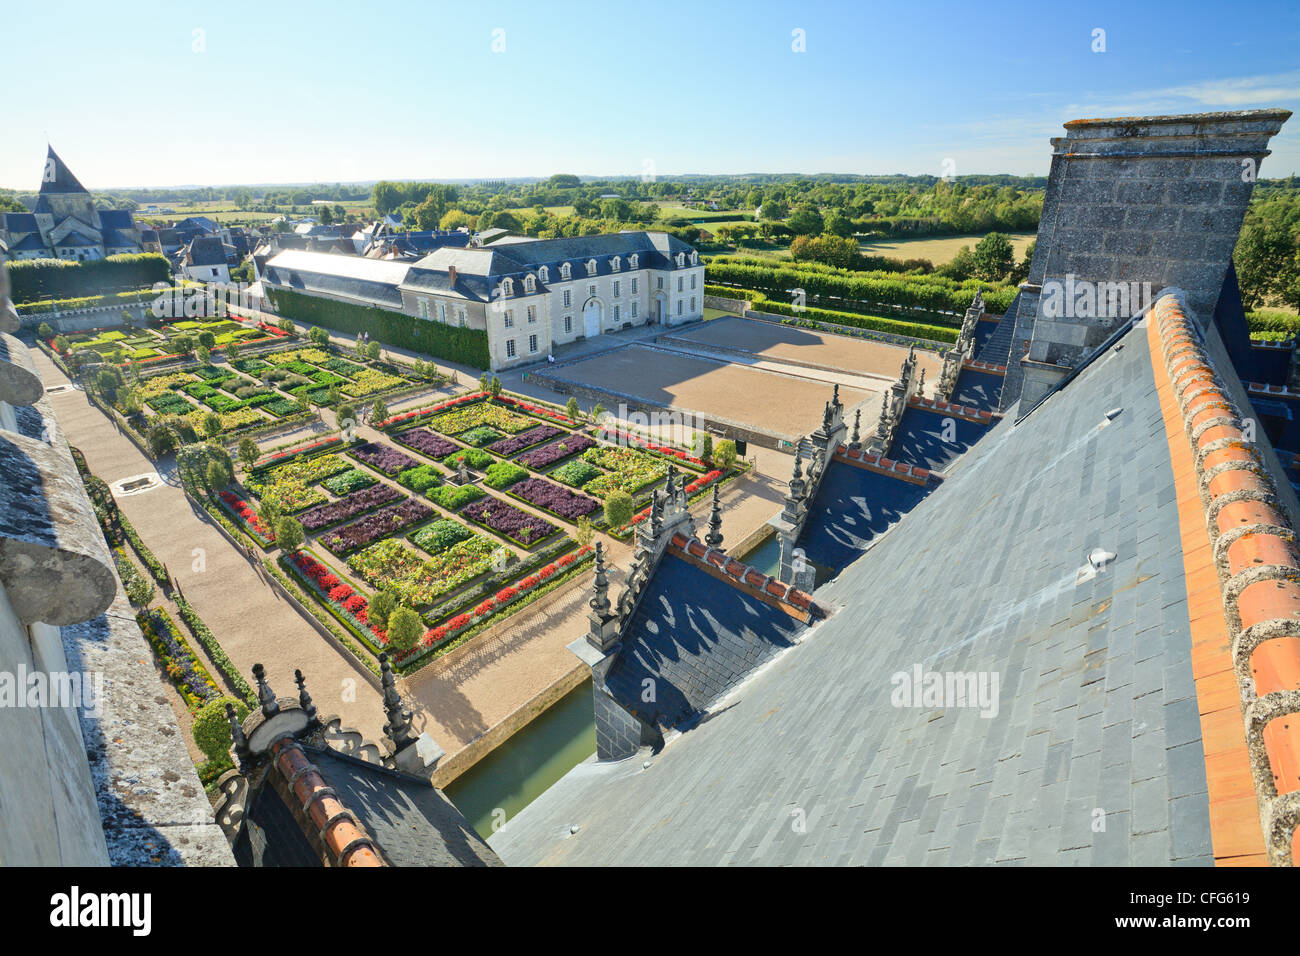 Frankreich, Gärten von Villandry Burg, gesehen auf den Dächern des Schlosses und der Gärten aus dem Kerker. Stockfoto